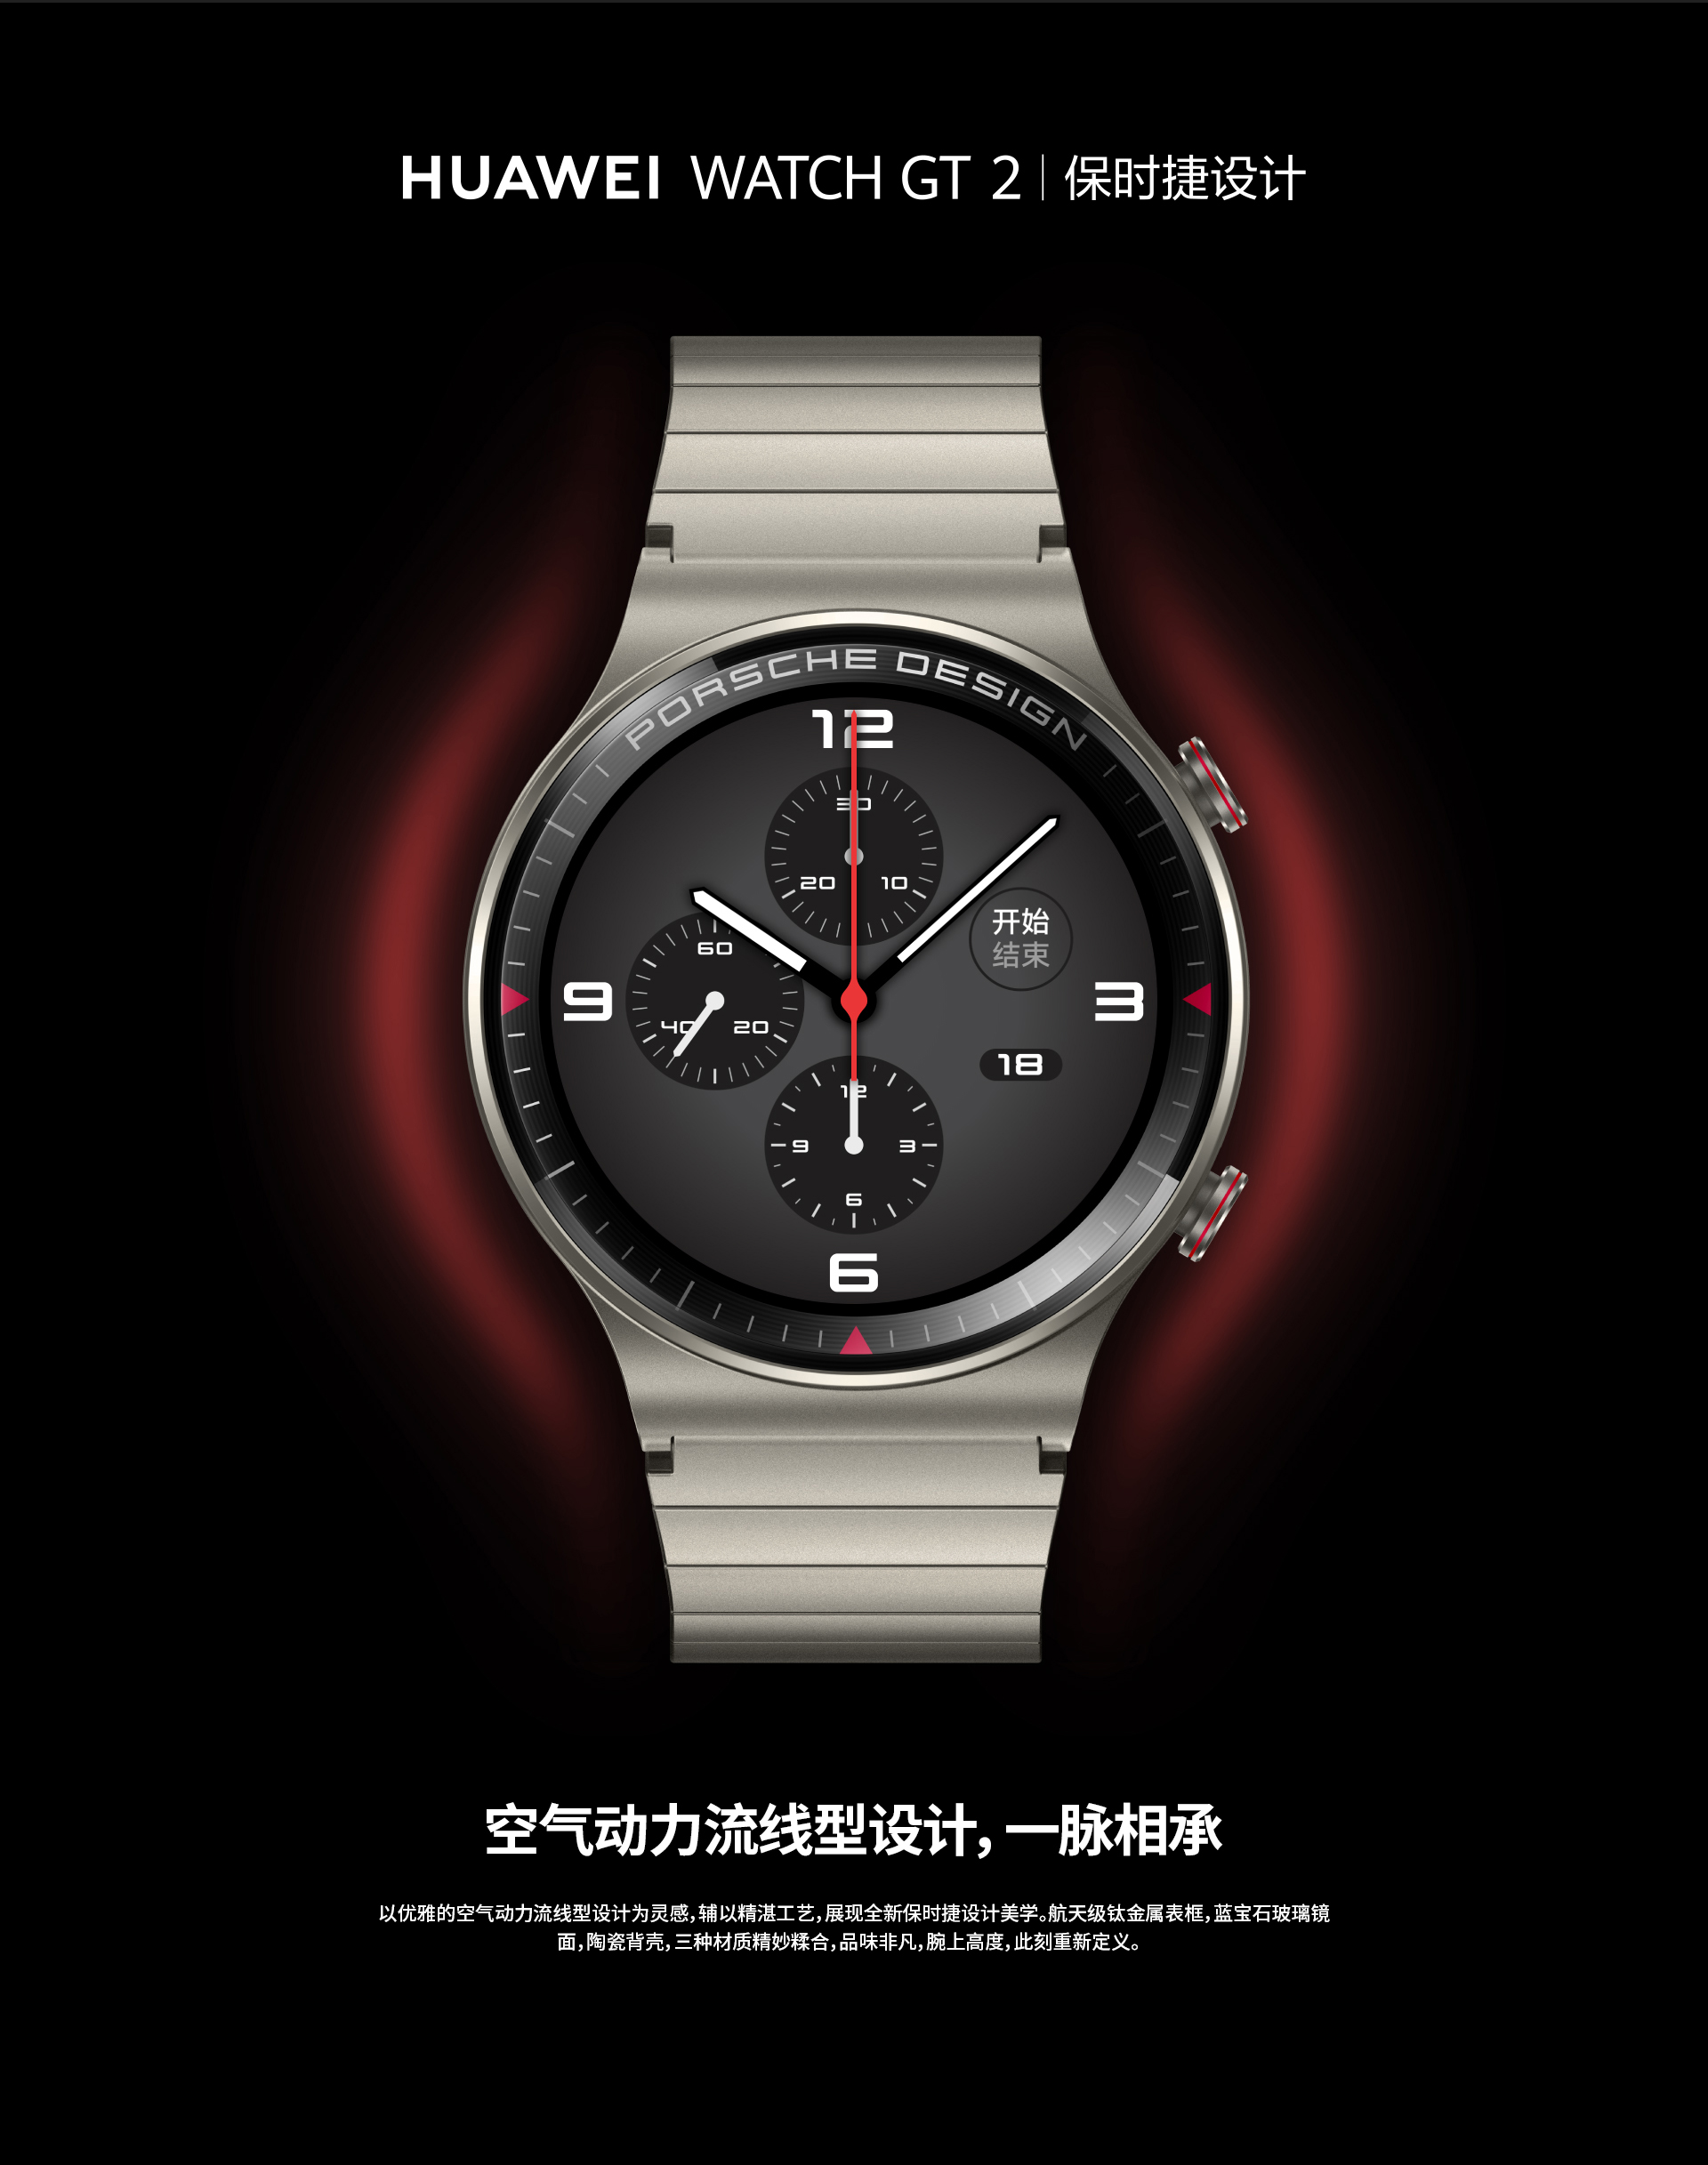 huaweiwatchgt2保时捷设计款钛金灰46mm华为智能手表全钛金属设计蓝